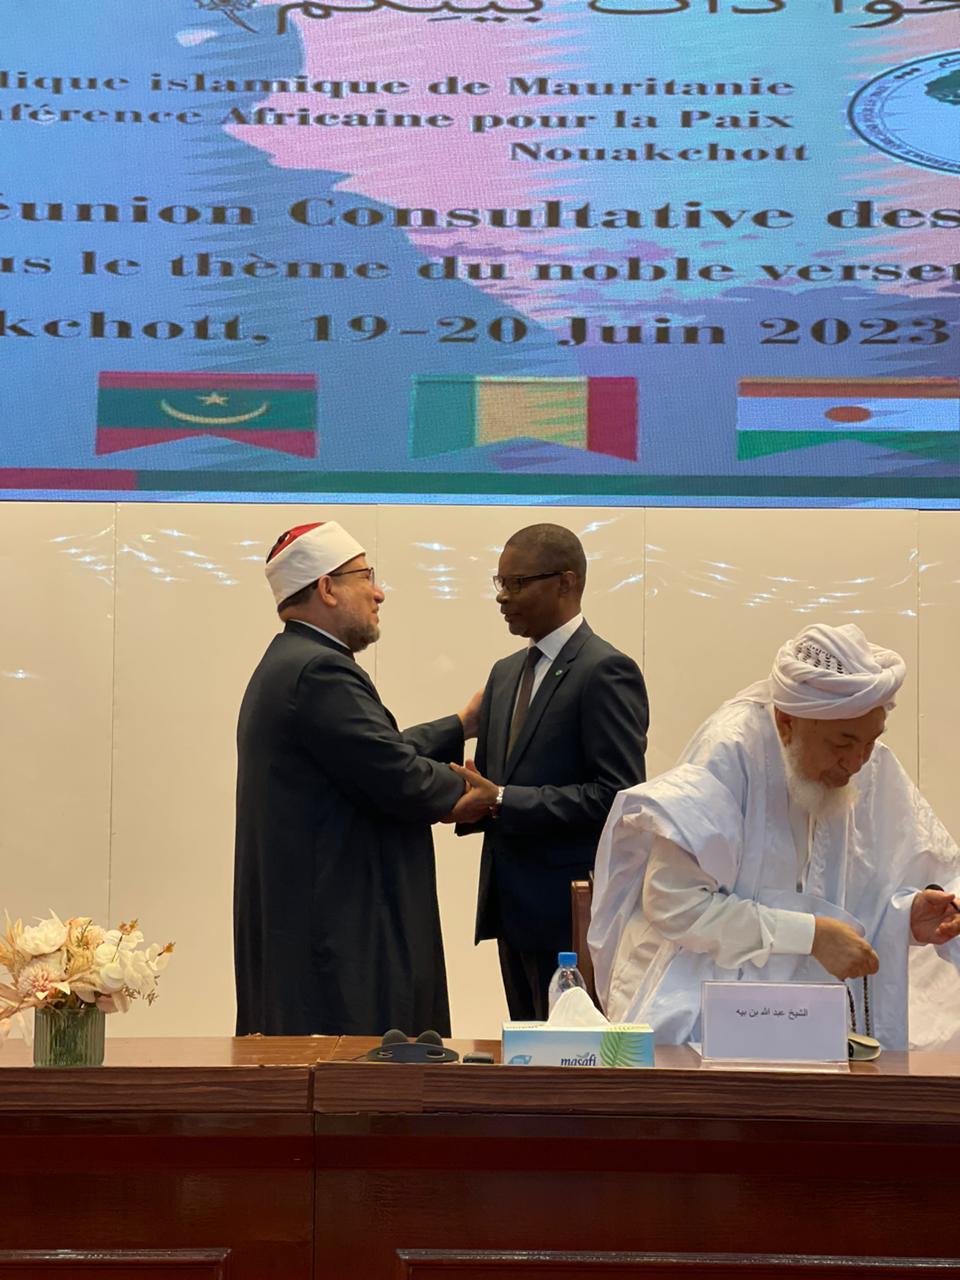  اللقاء التشاوري لعلماء الساحل والسودان الذي يعقده المؤتمر الأفريقي للسلم بالعاصمة الموريتانية نواكش